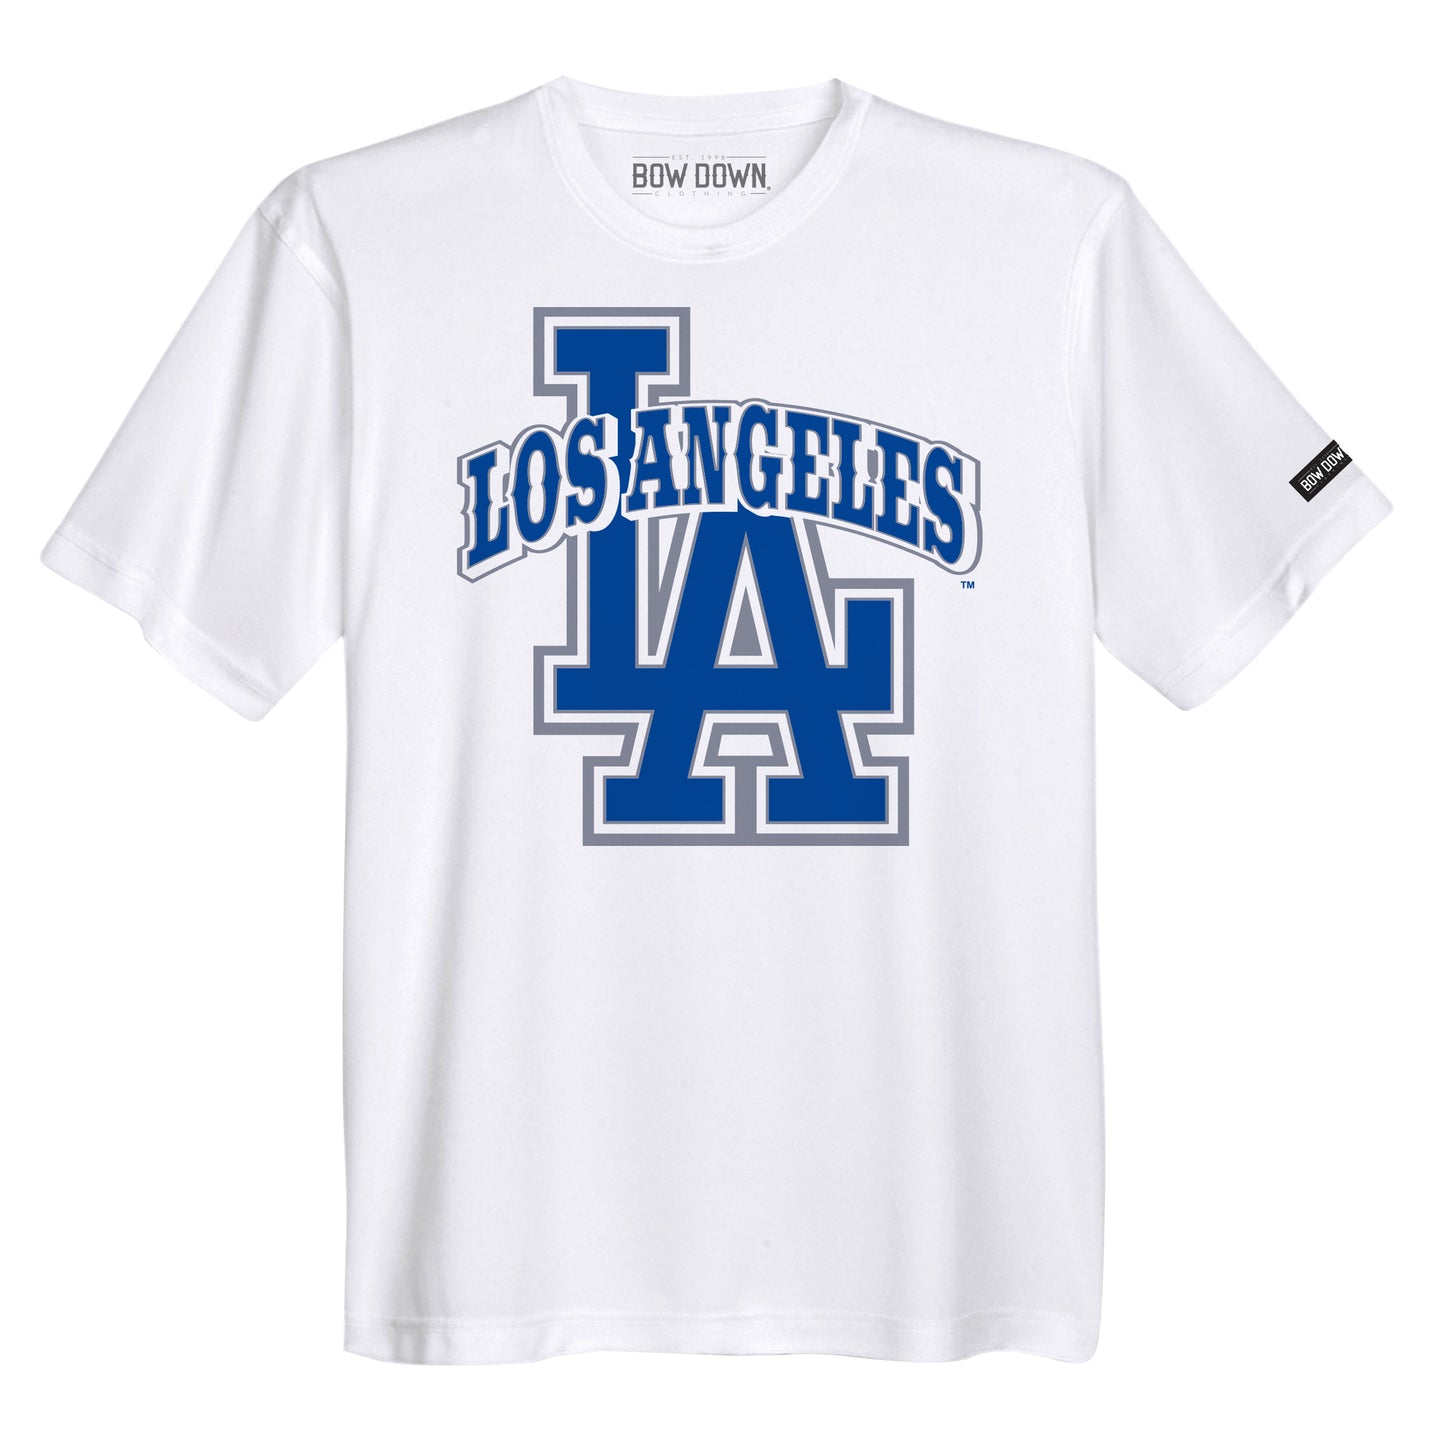 Big Los Angeles (White Shirt)